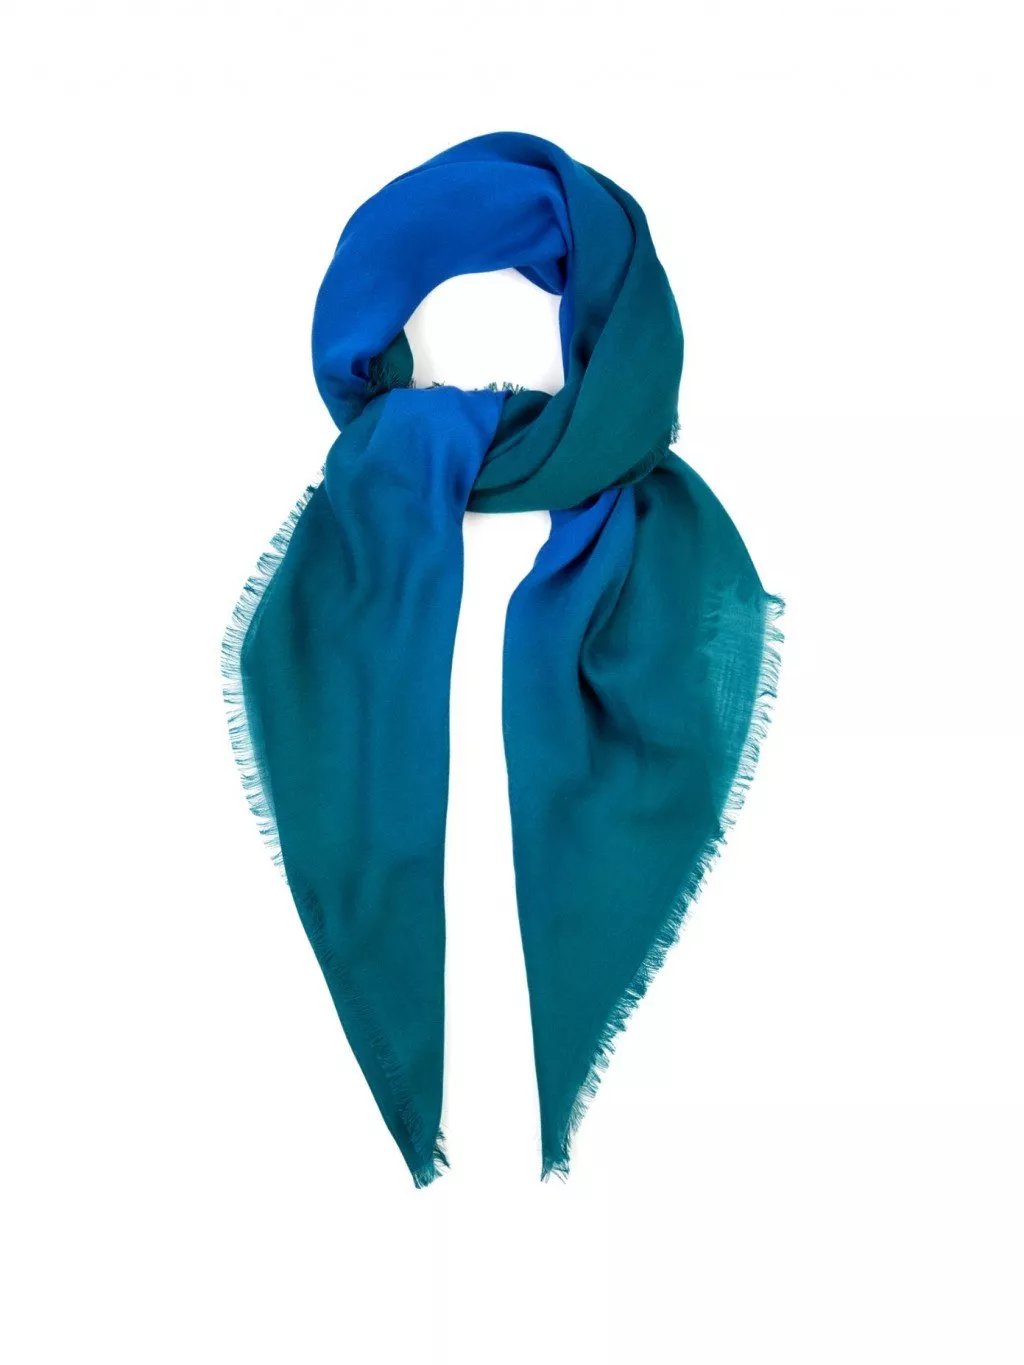 10 أوشحة يمكنكِ تحويلها إلى حجاب أو غطاء للرأس في صيف 2016